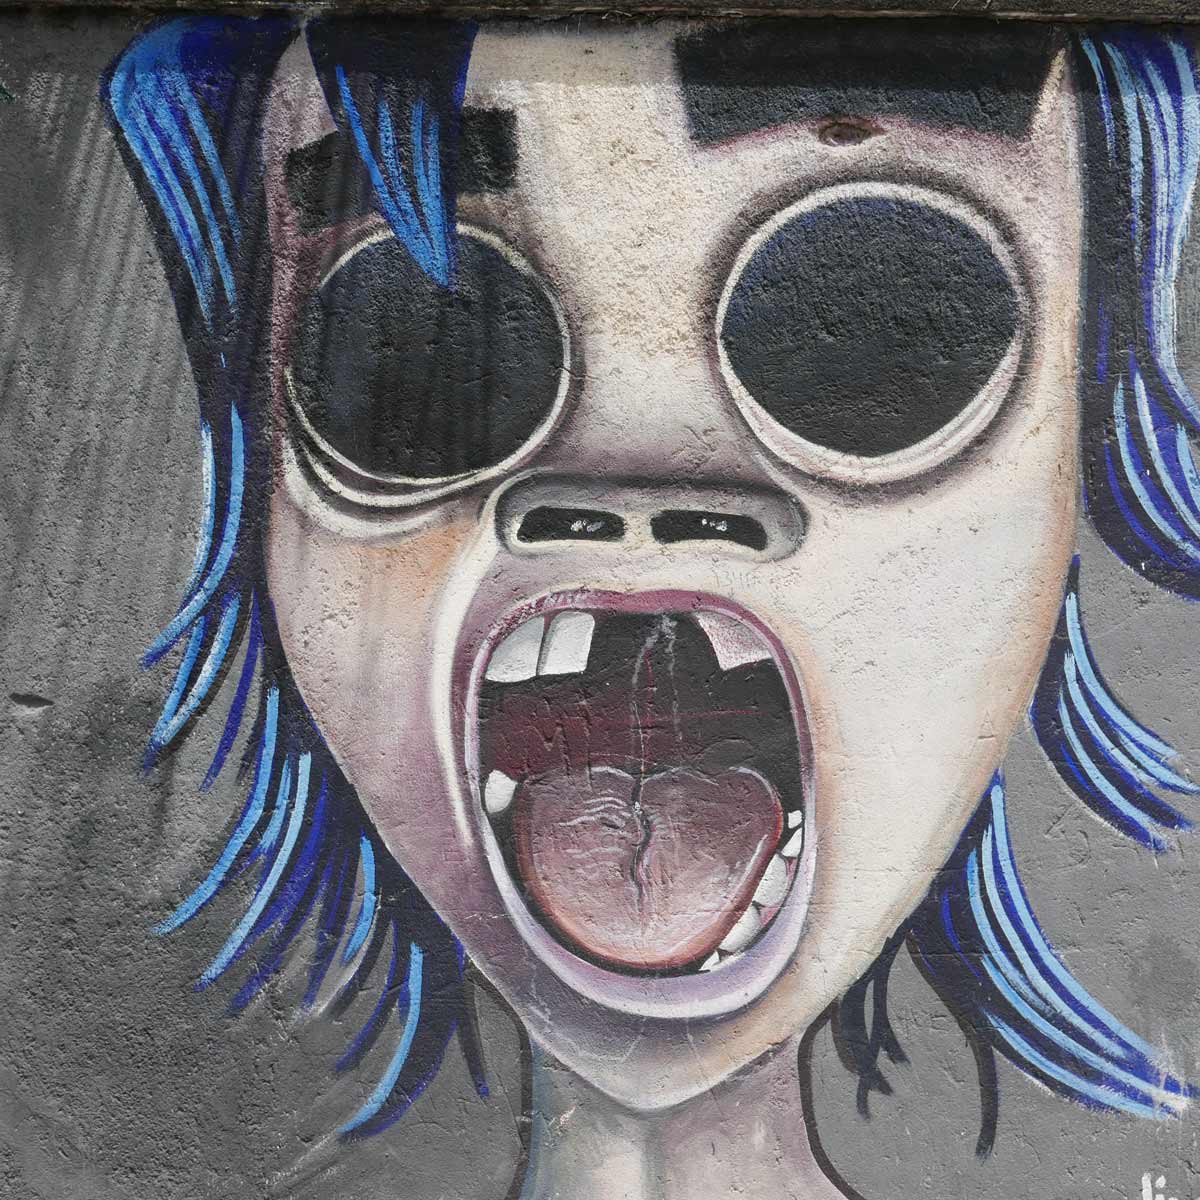 Screaming kid graffiti in Esteli, Nicaragua